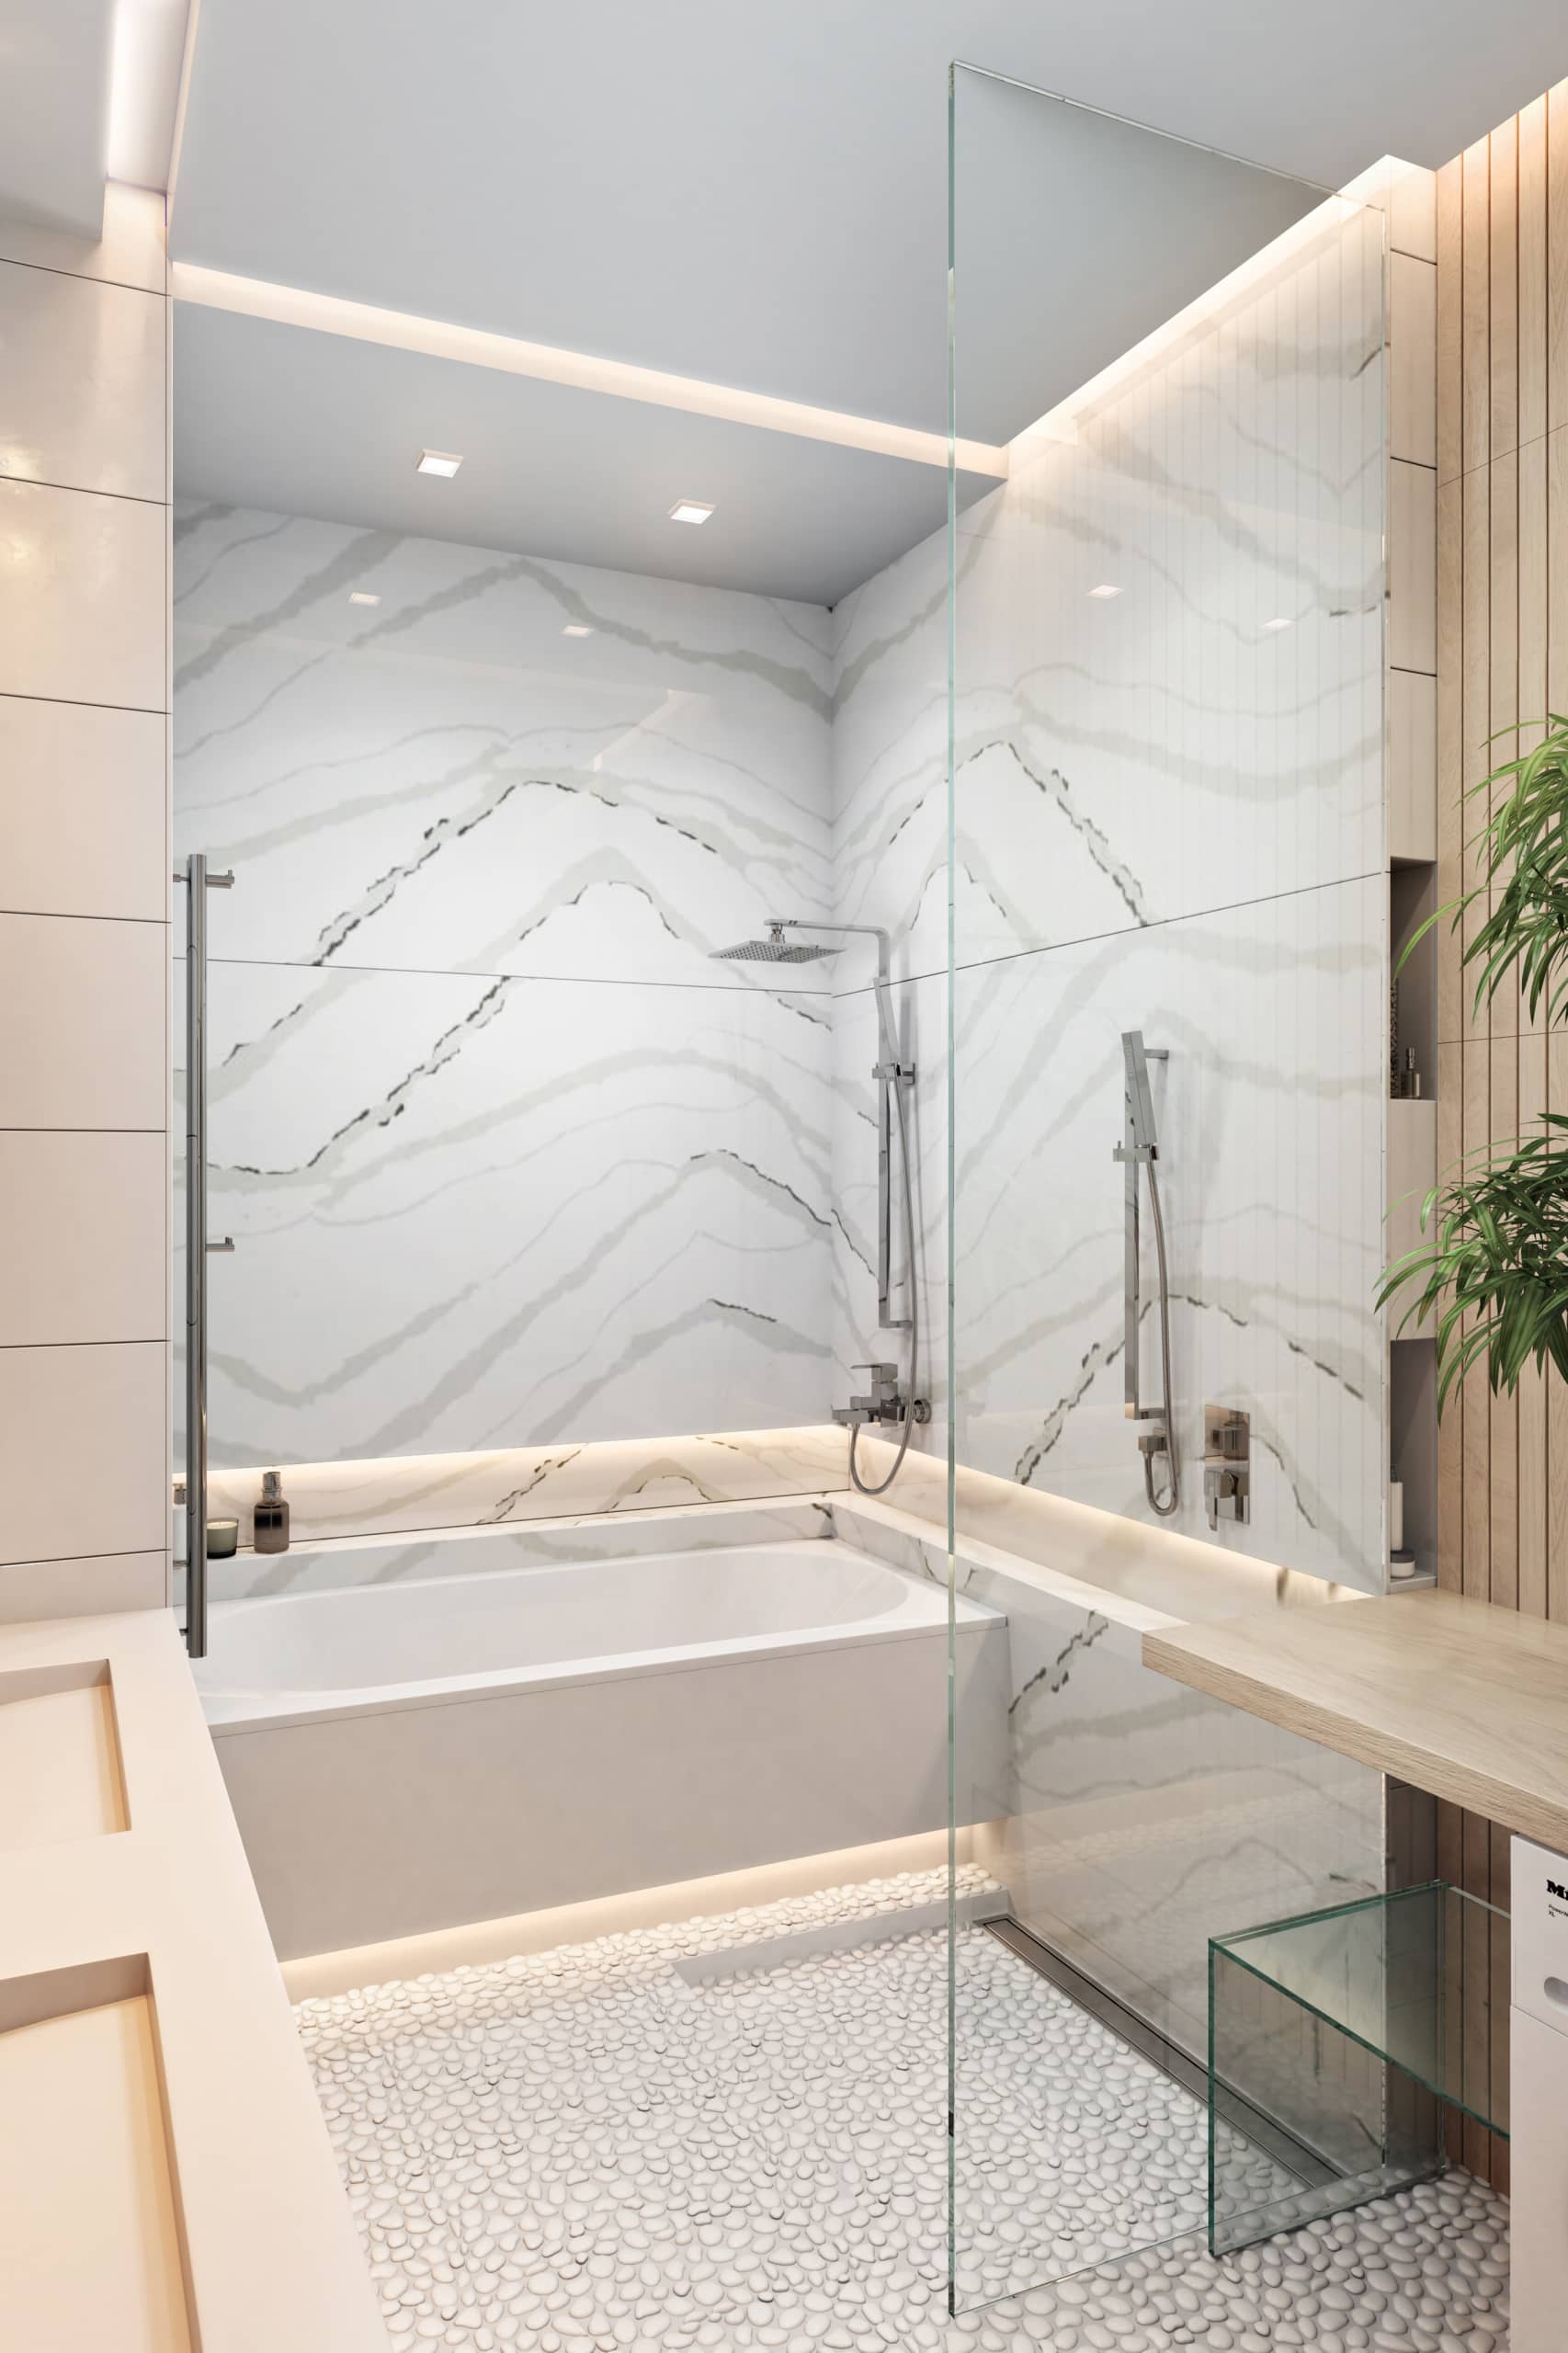 Мраморные поверхности на стенах для утончённости ванной комнаты